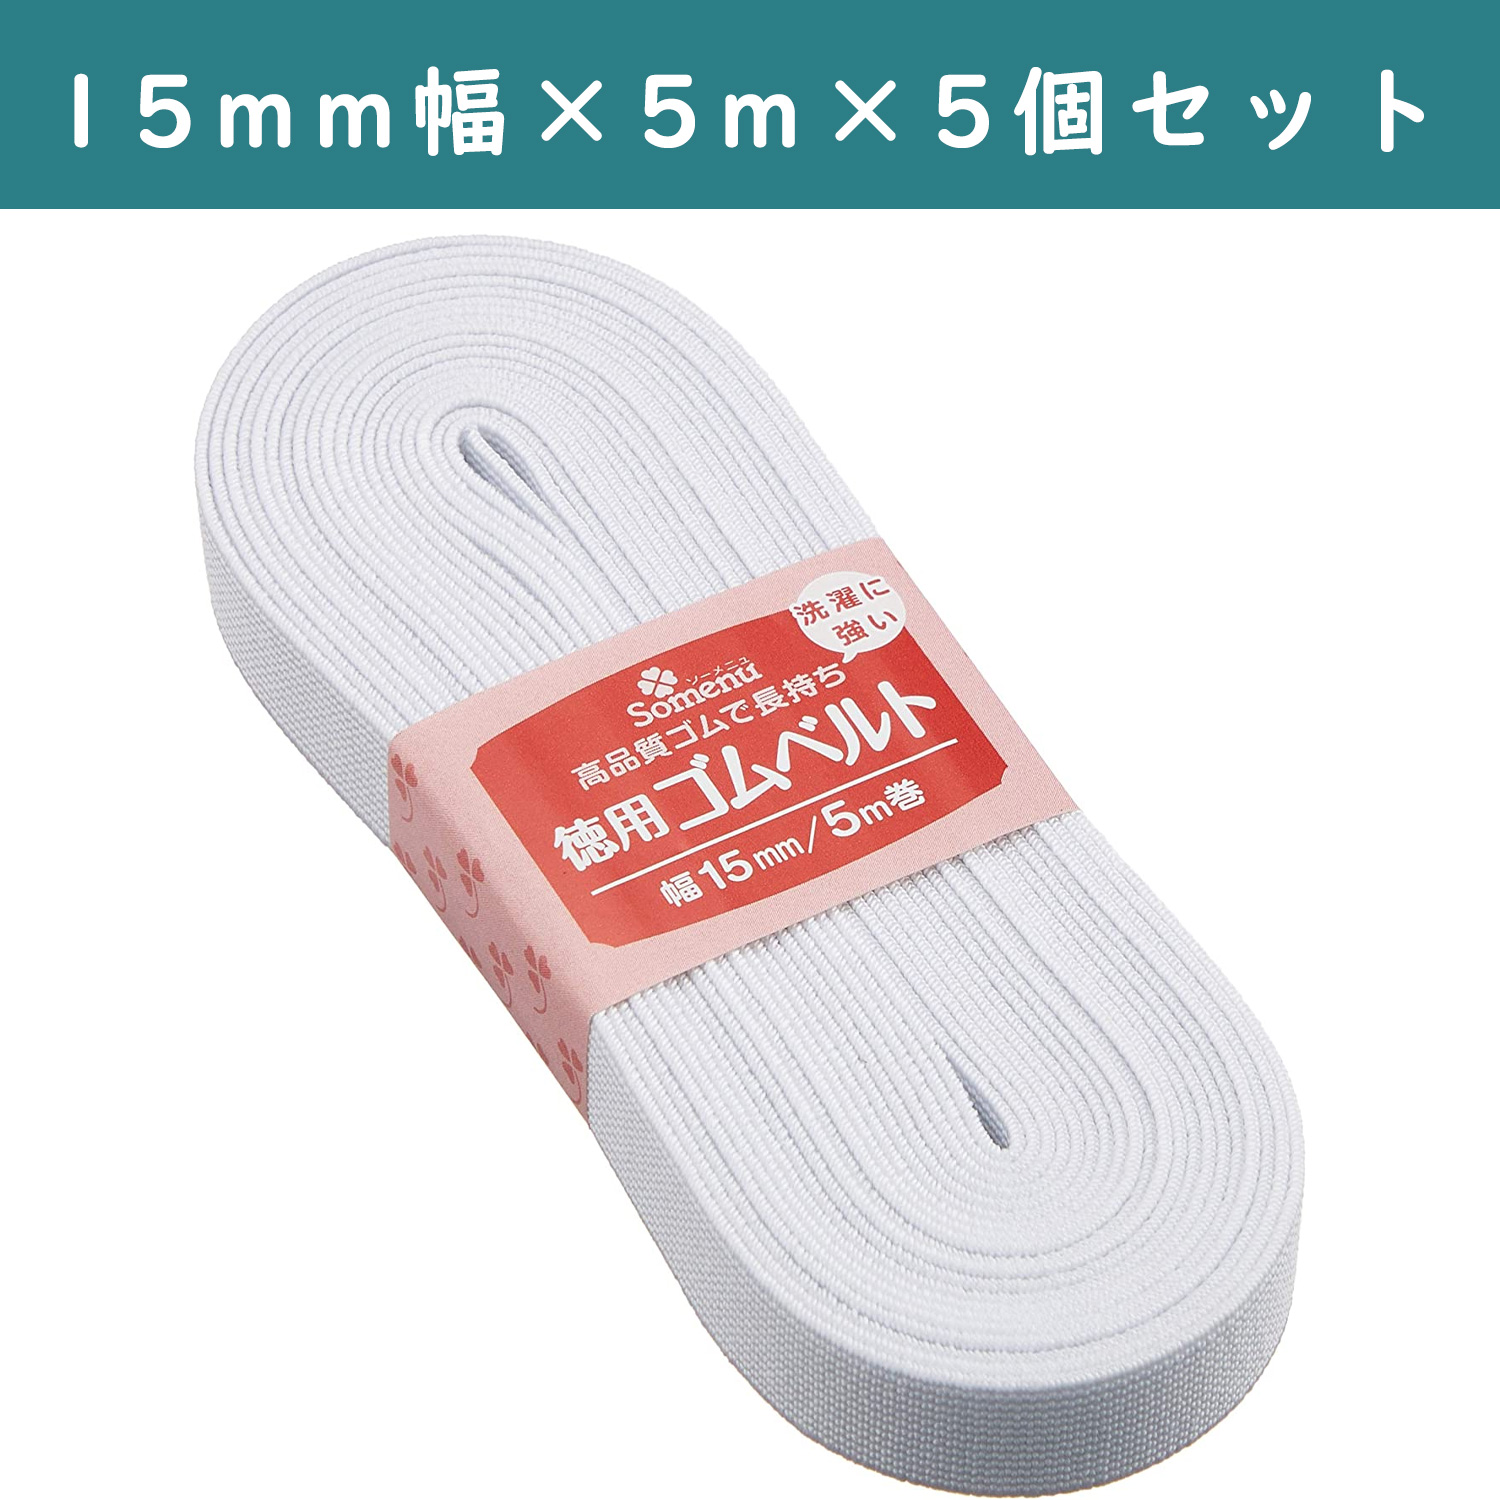 ■【5個】CL26-075-5set 徳用ゴムベルト 15mm幅 ×5個 (セット)